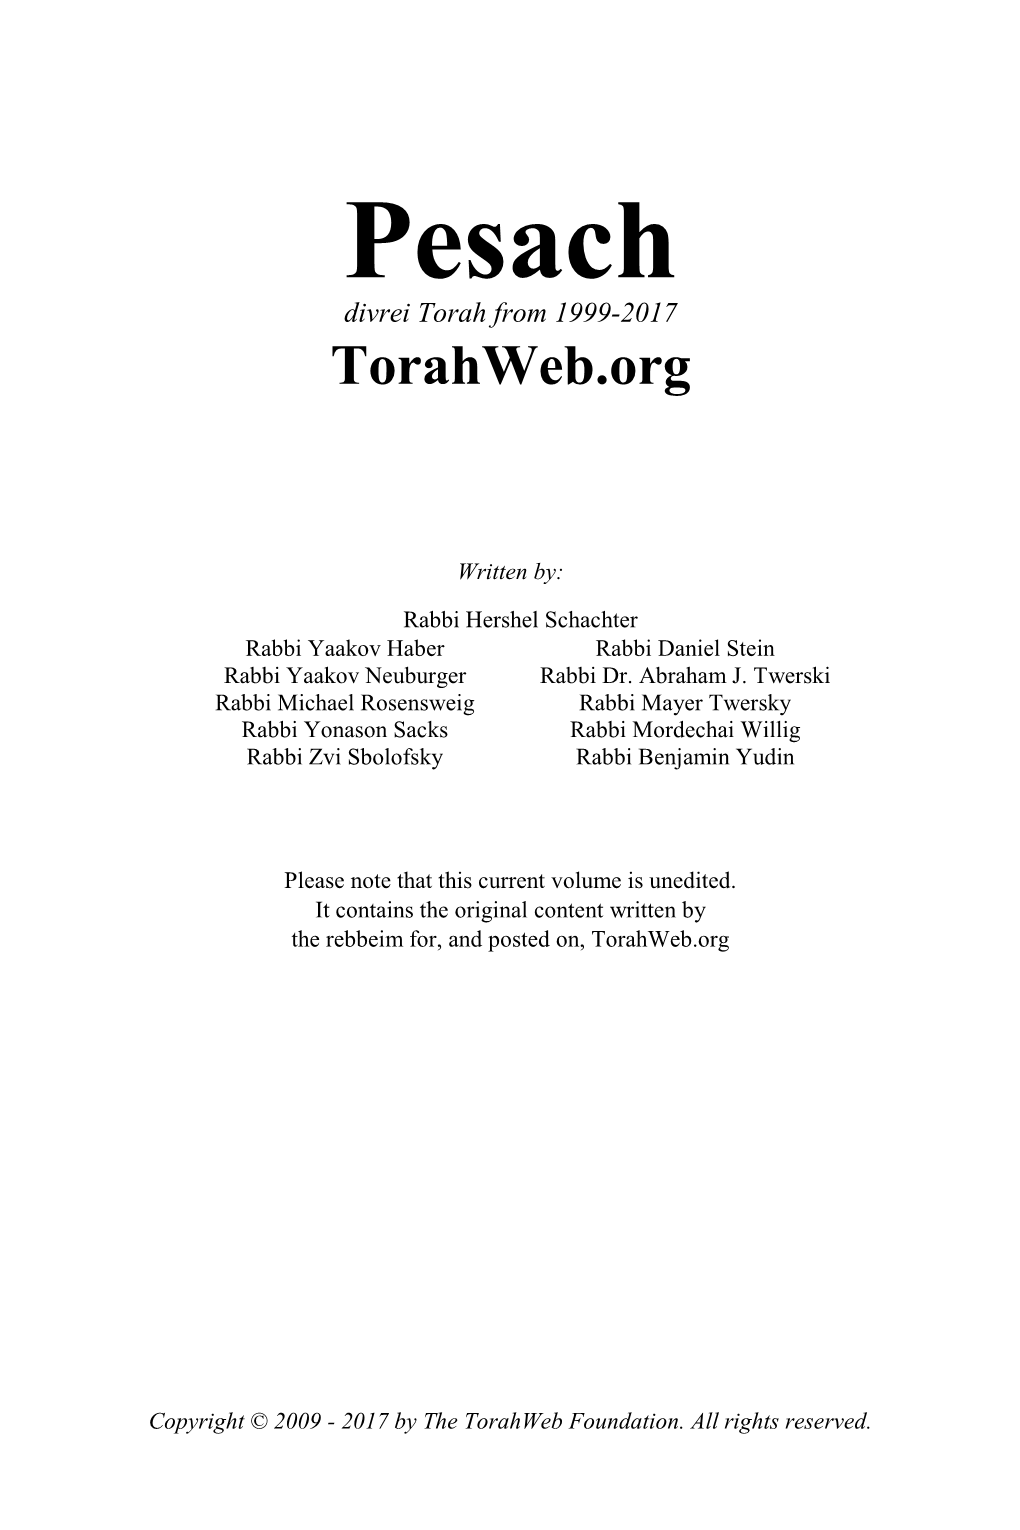 Pesach Divrei Torah from 1999-2017 Torahweb.Org